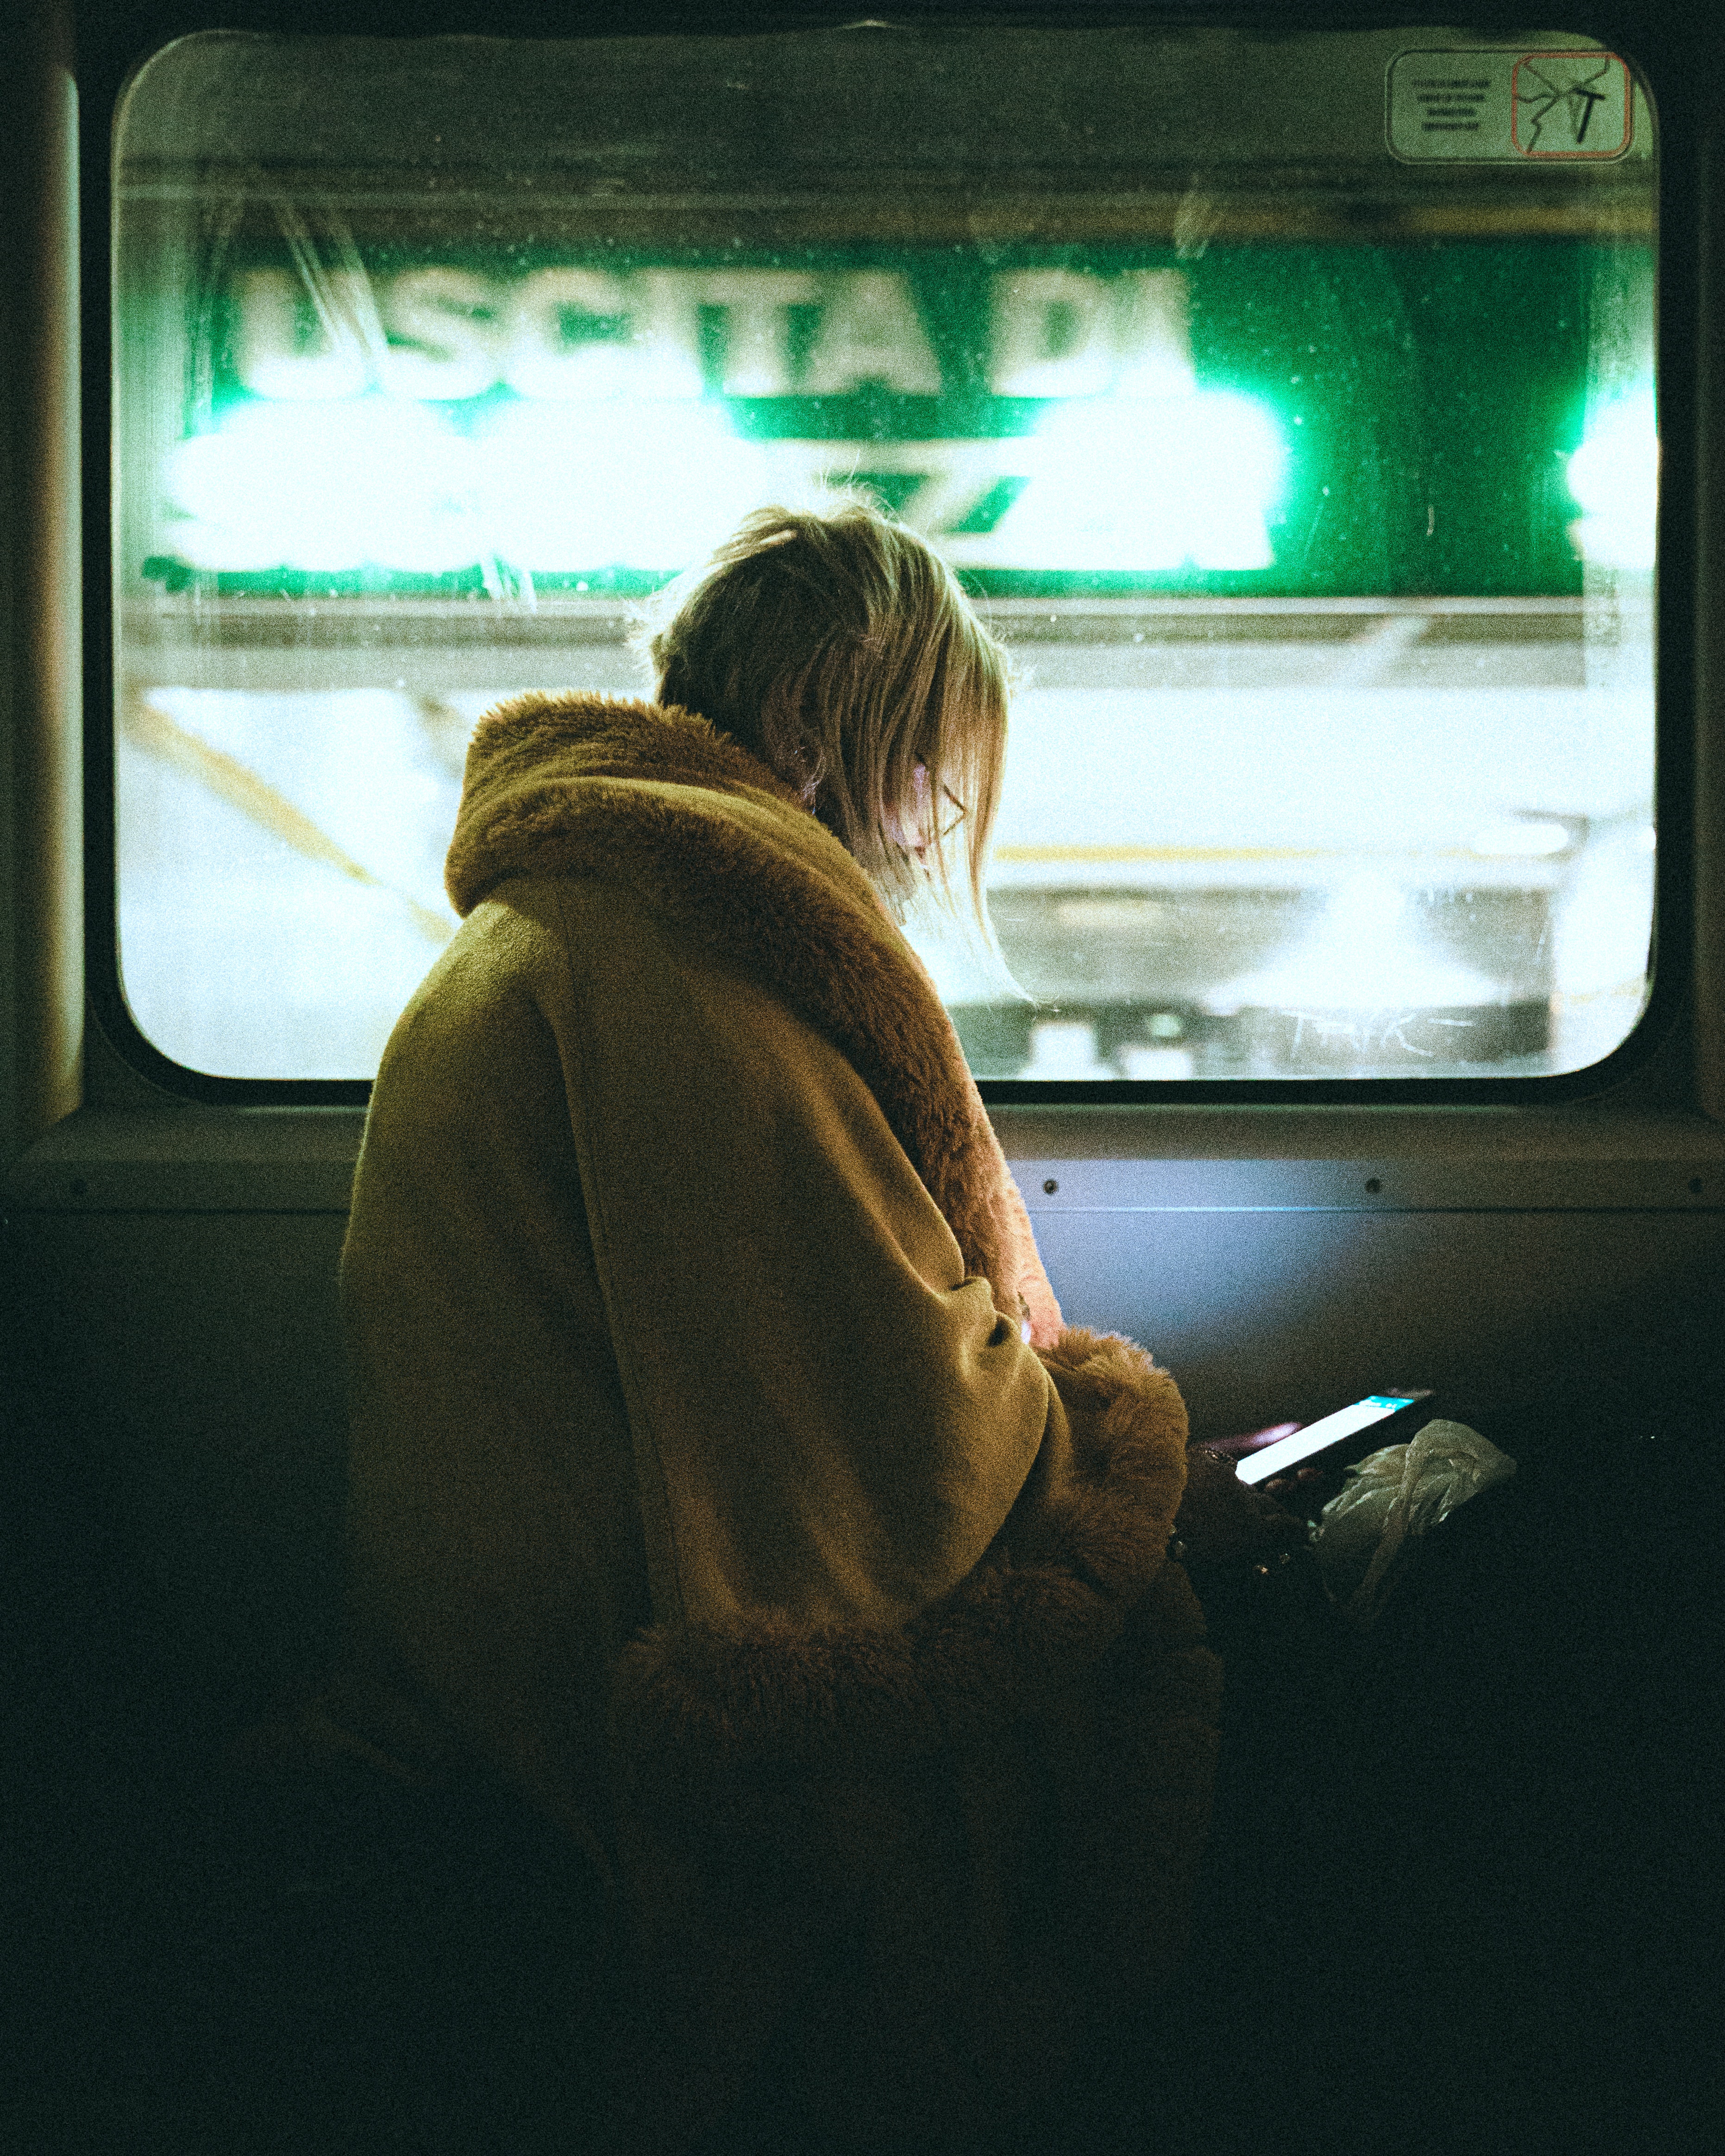 Une femme regardant son téléphone portable dans une cabine de train sombre | Source : Pexels